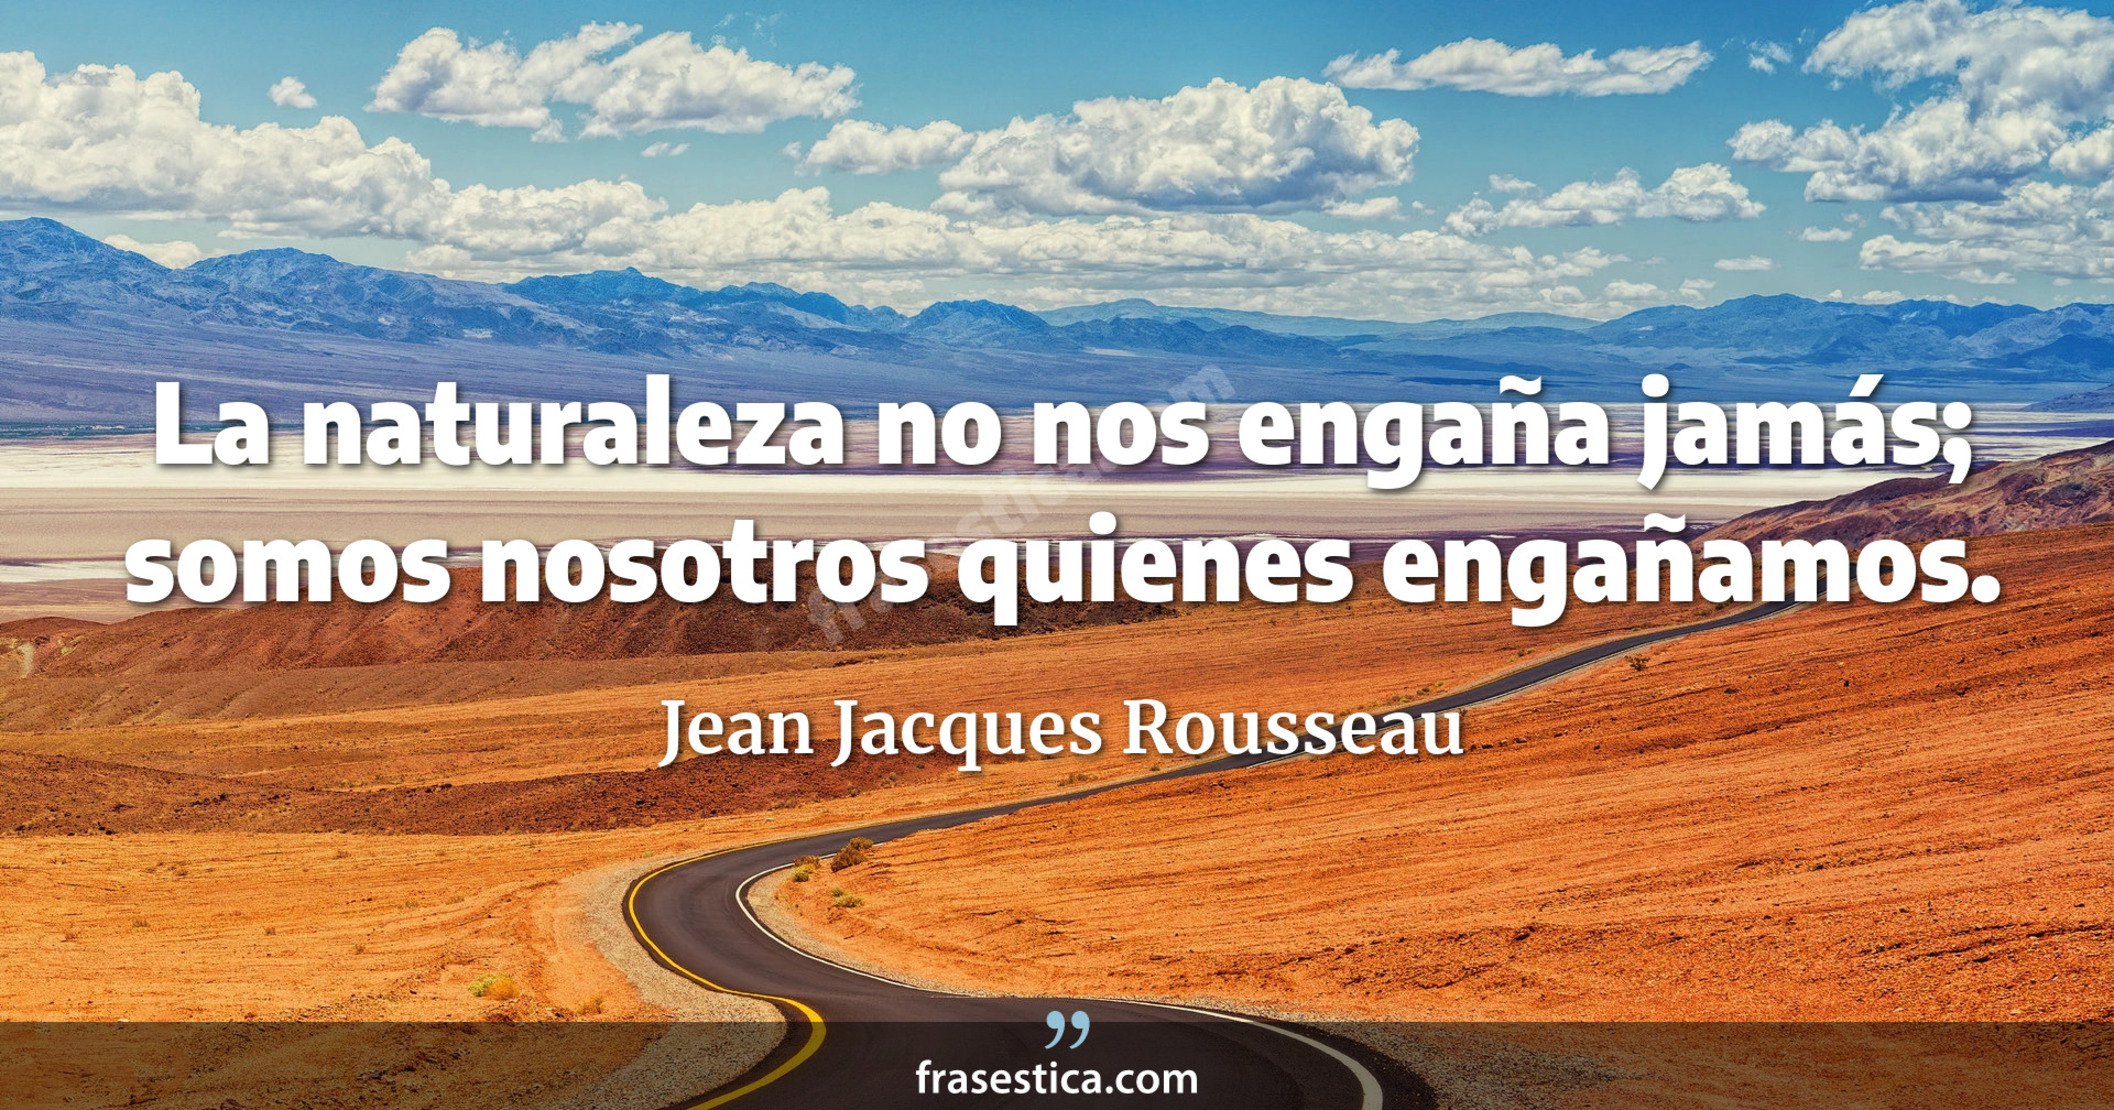 La naturaleza no nos engaña jamás; somos nosotros quienes engañamos. - Jean Jacques Rousseau